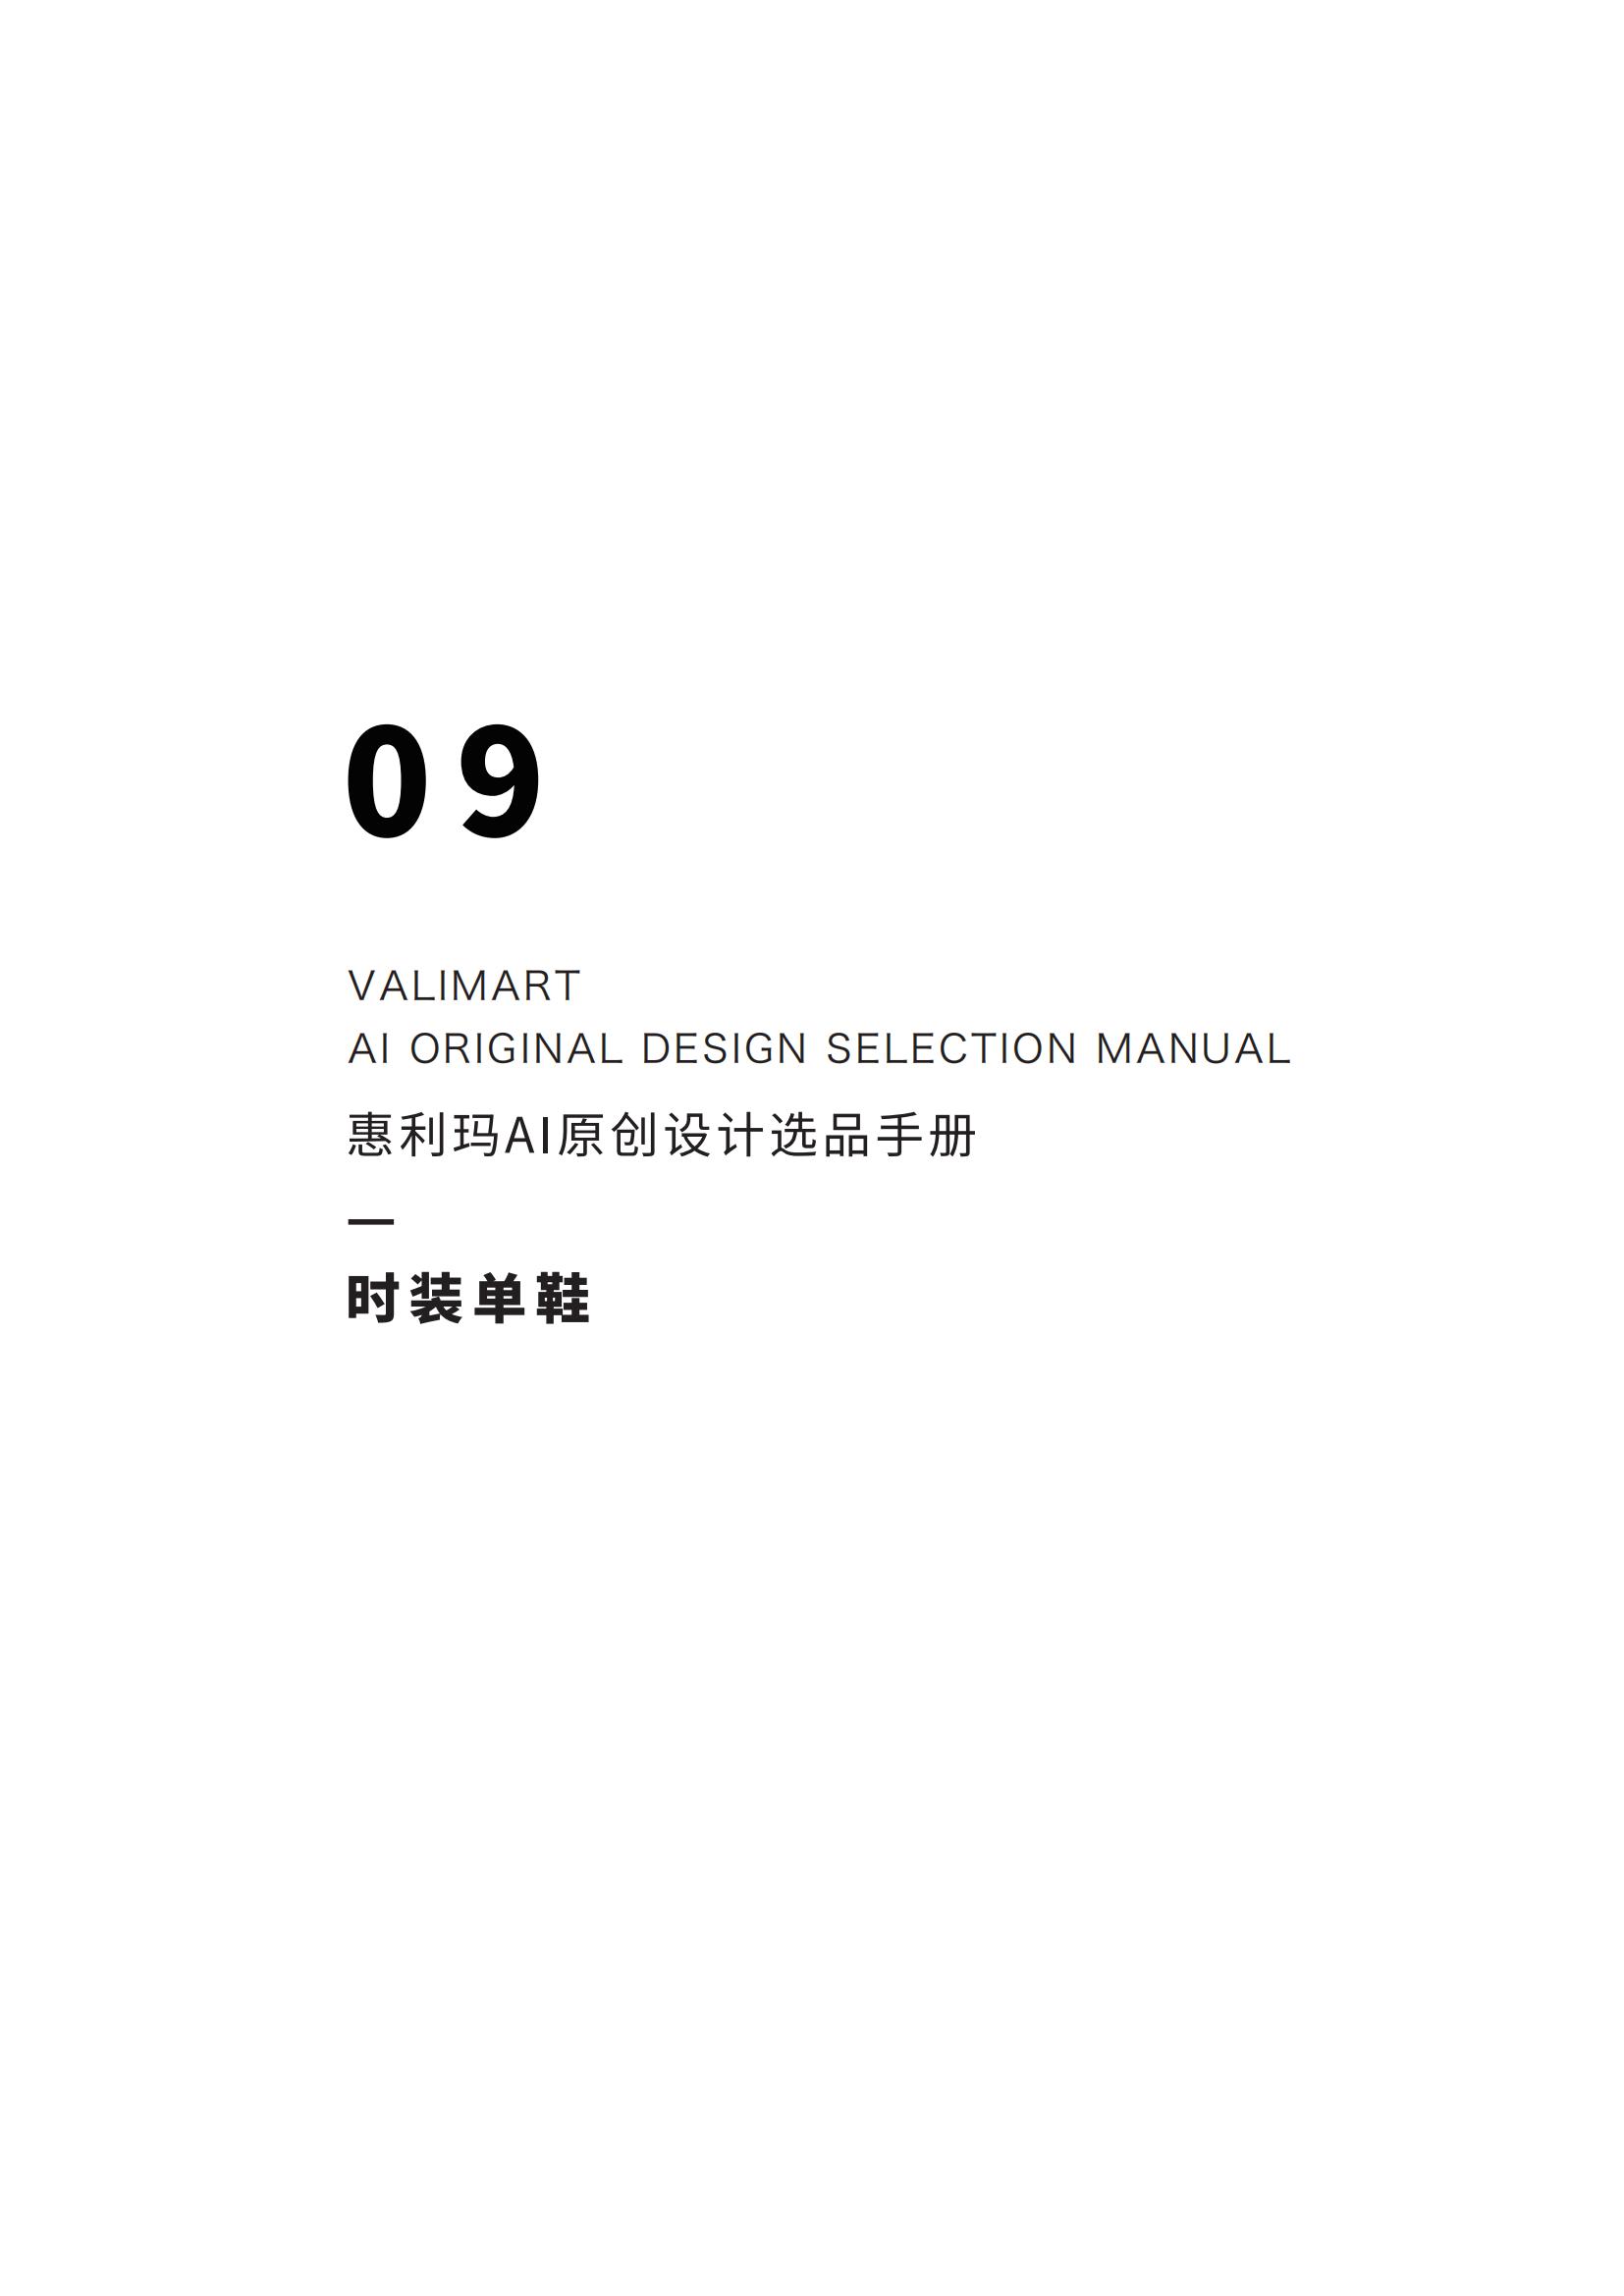 【24年1-2月刊】惠利玛AI原创设计选品手册